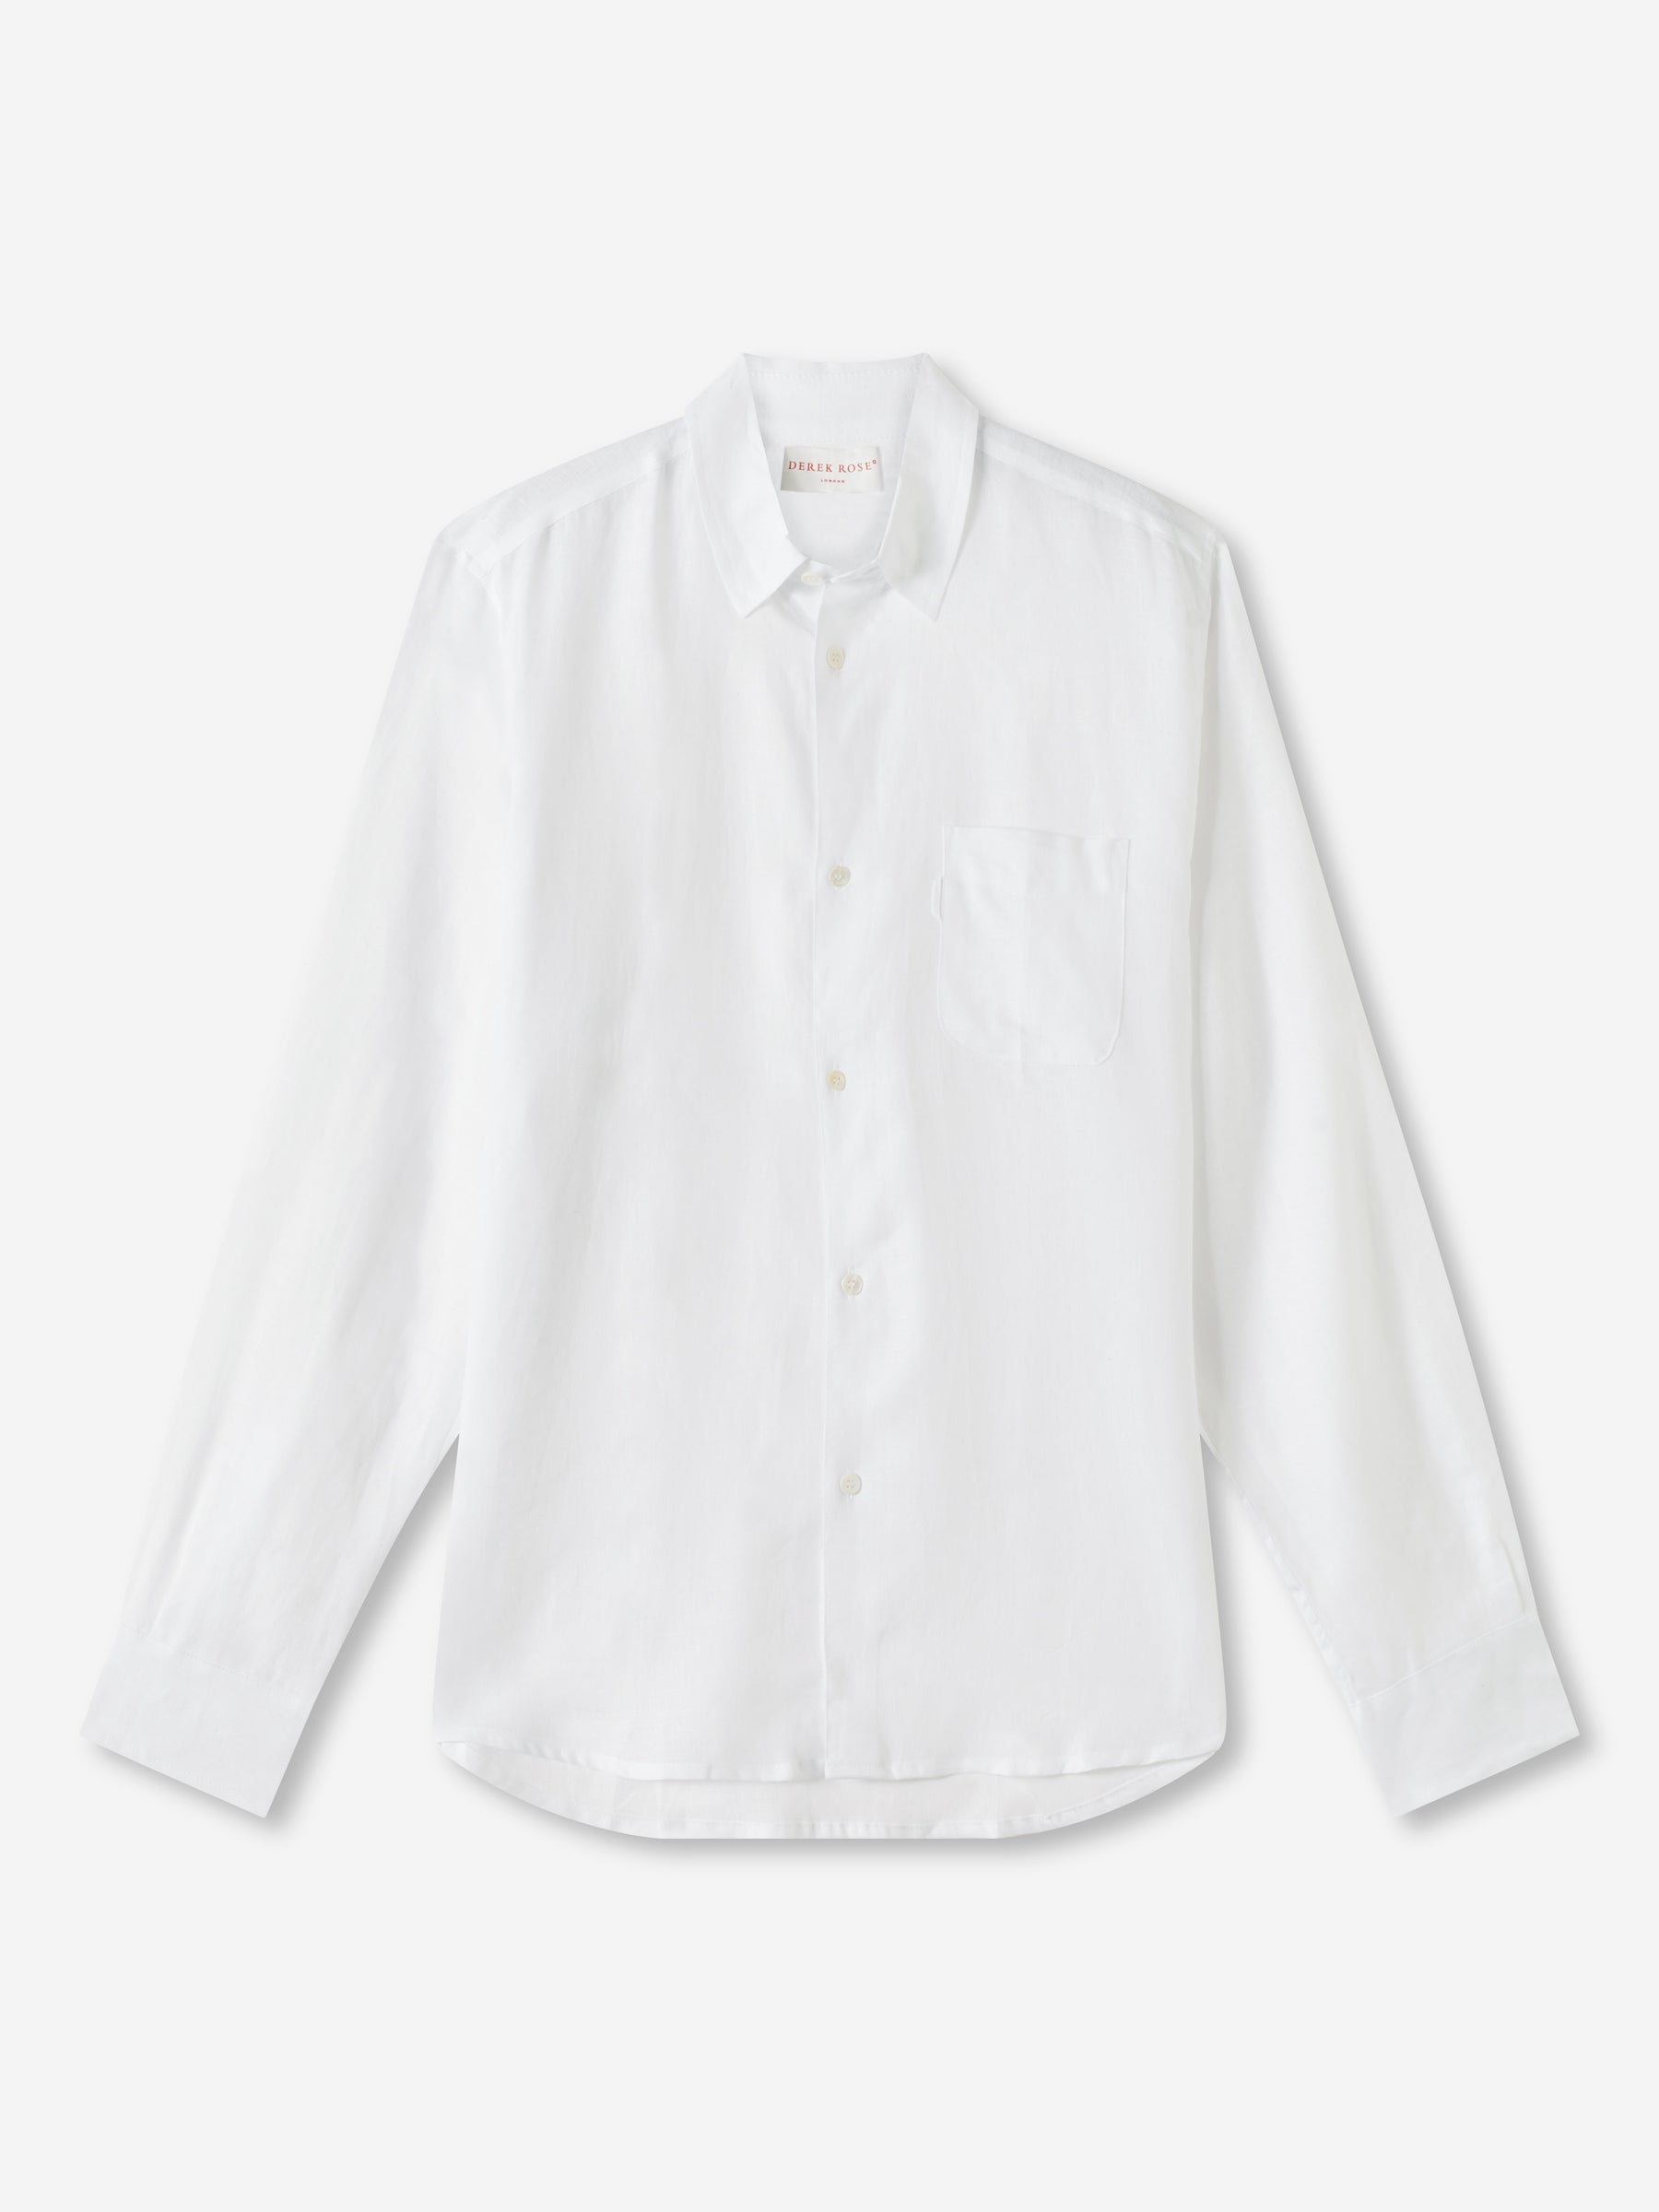 Men's Shirt Monaco Linen White